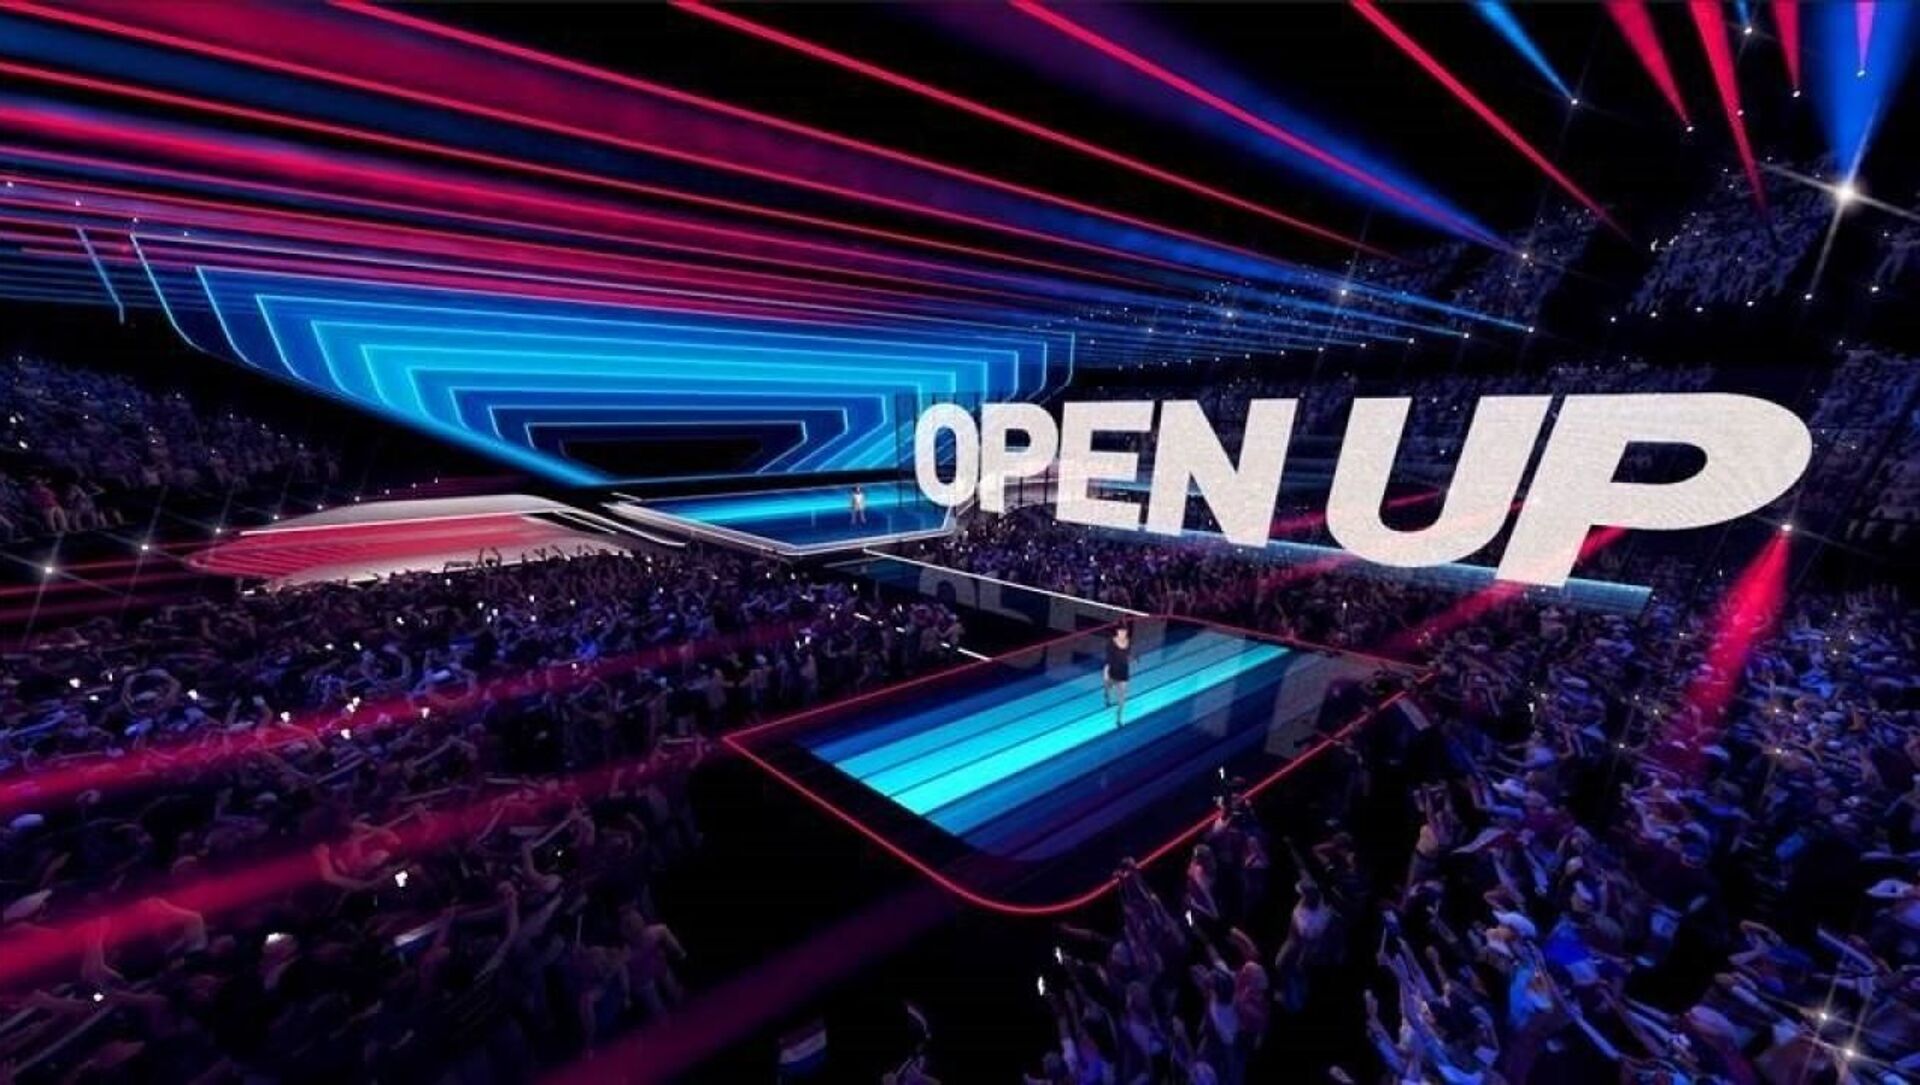 На сцене Евровидения в Роттердаме в 2021 году будет установлен полупрозрачный светодиодный экран - Sputnik Беларусь, 1920, 03.03.2021